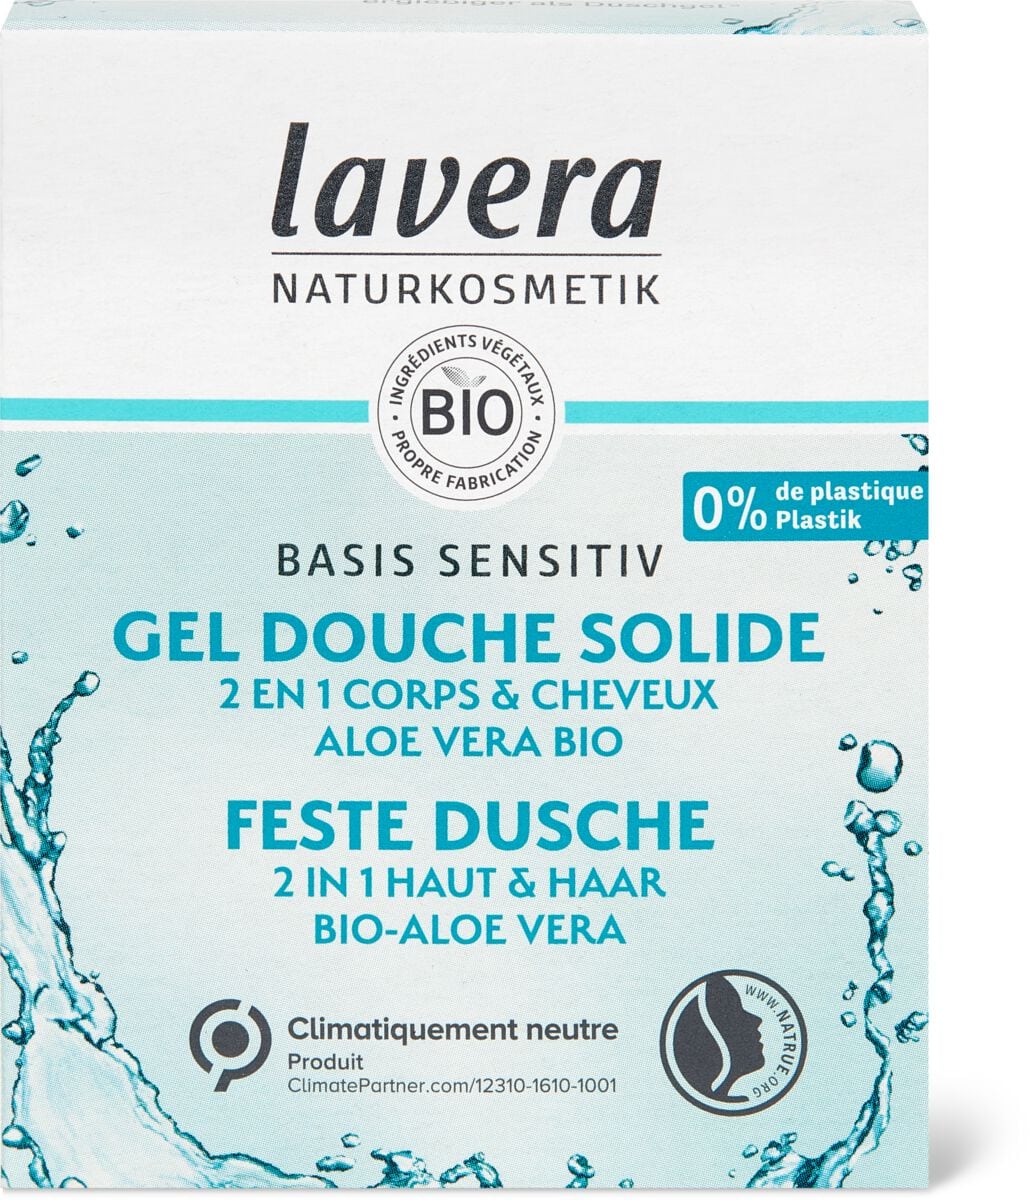 Lavera Basis Sensitiv feste Dusche 2in1 Haut & Haar | Migros Migipedia